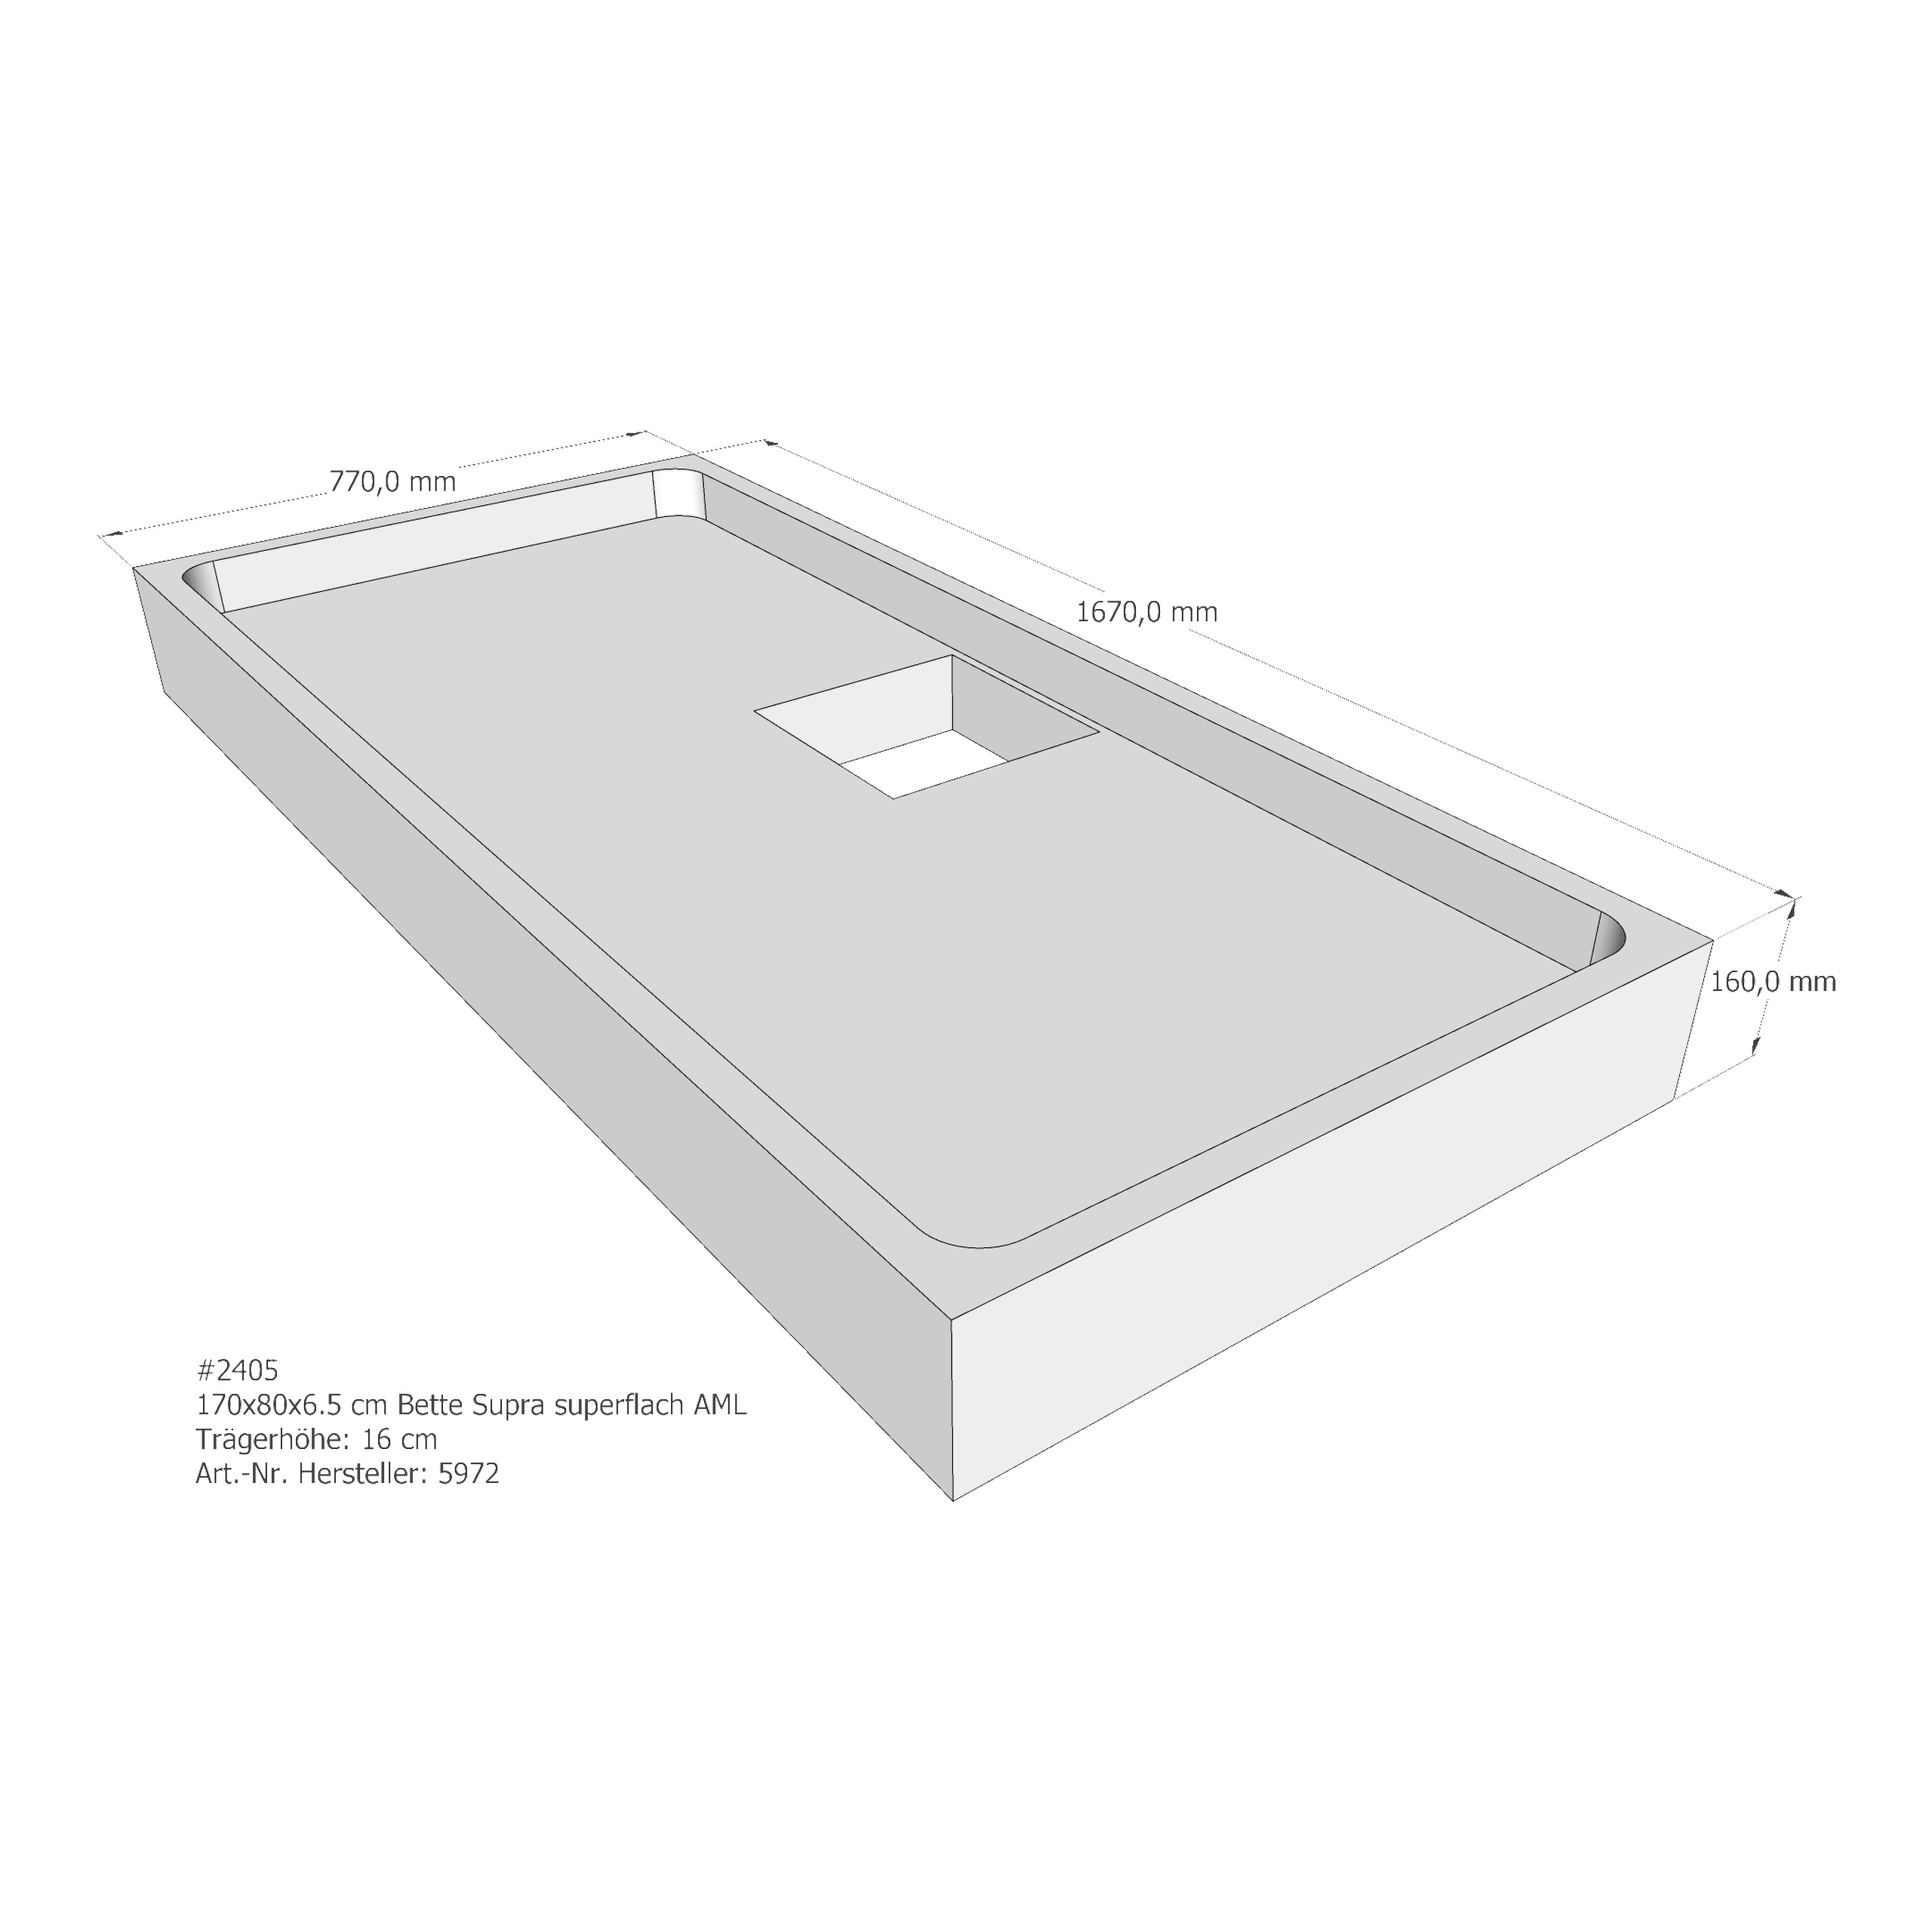 Duschwannenträger für Bette BetteSupra (extraflach) 170 × 80 × 6,5 cm